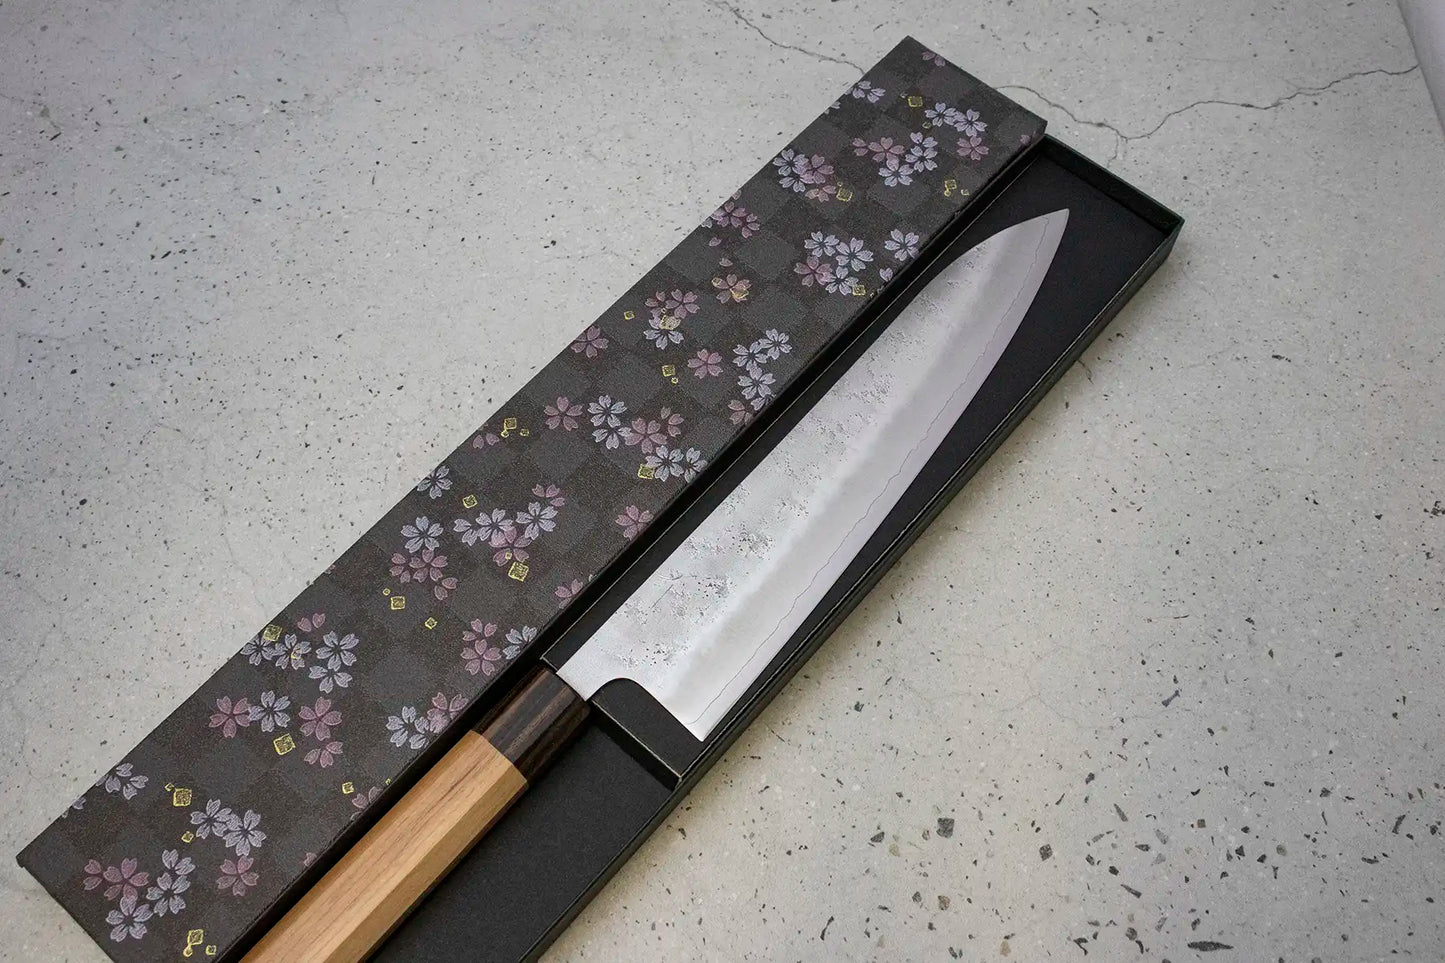 Hitohira Futana S3 Gyuto (Chefs Knife) 240mm